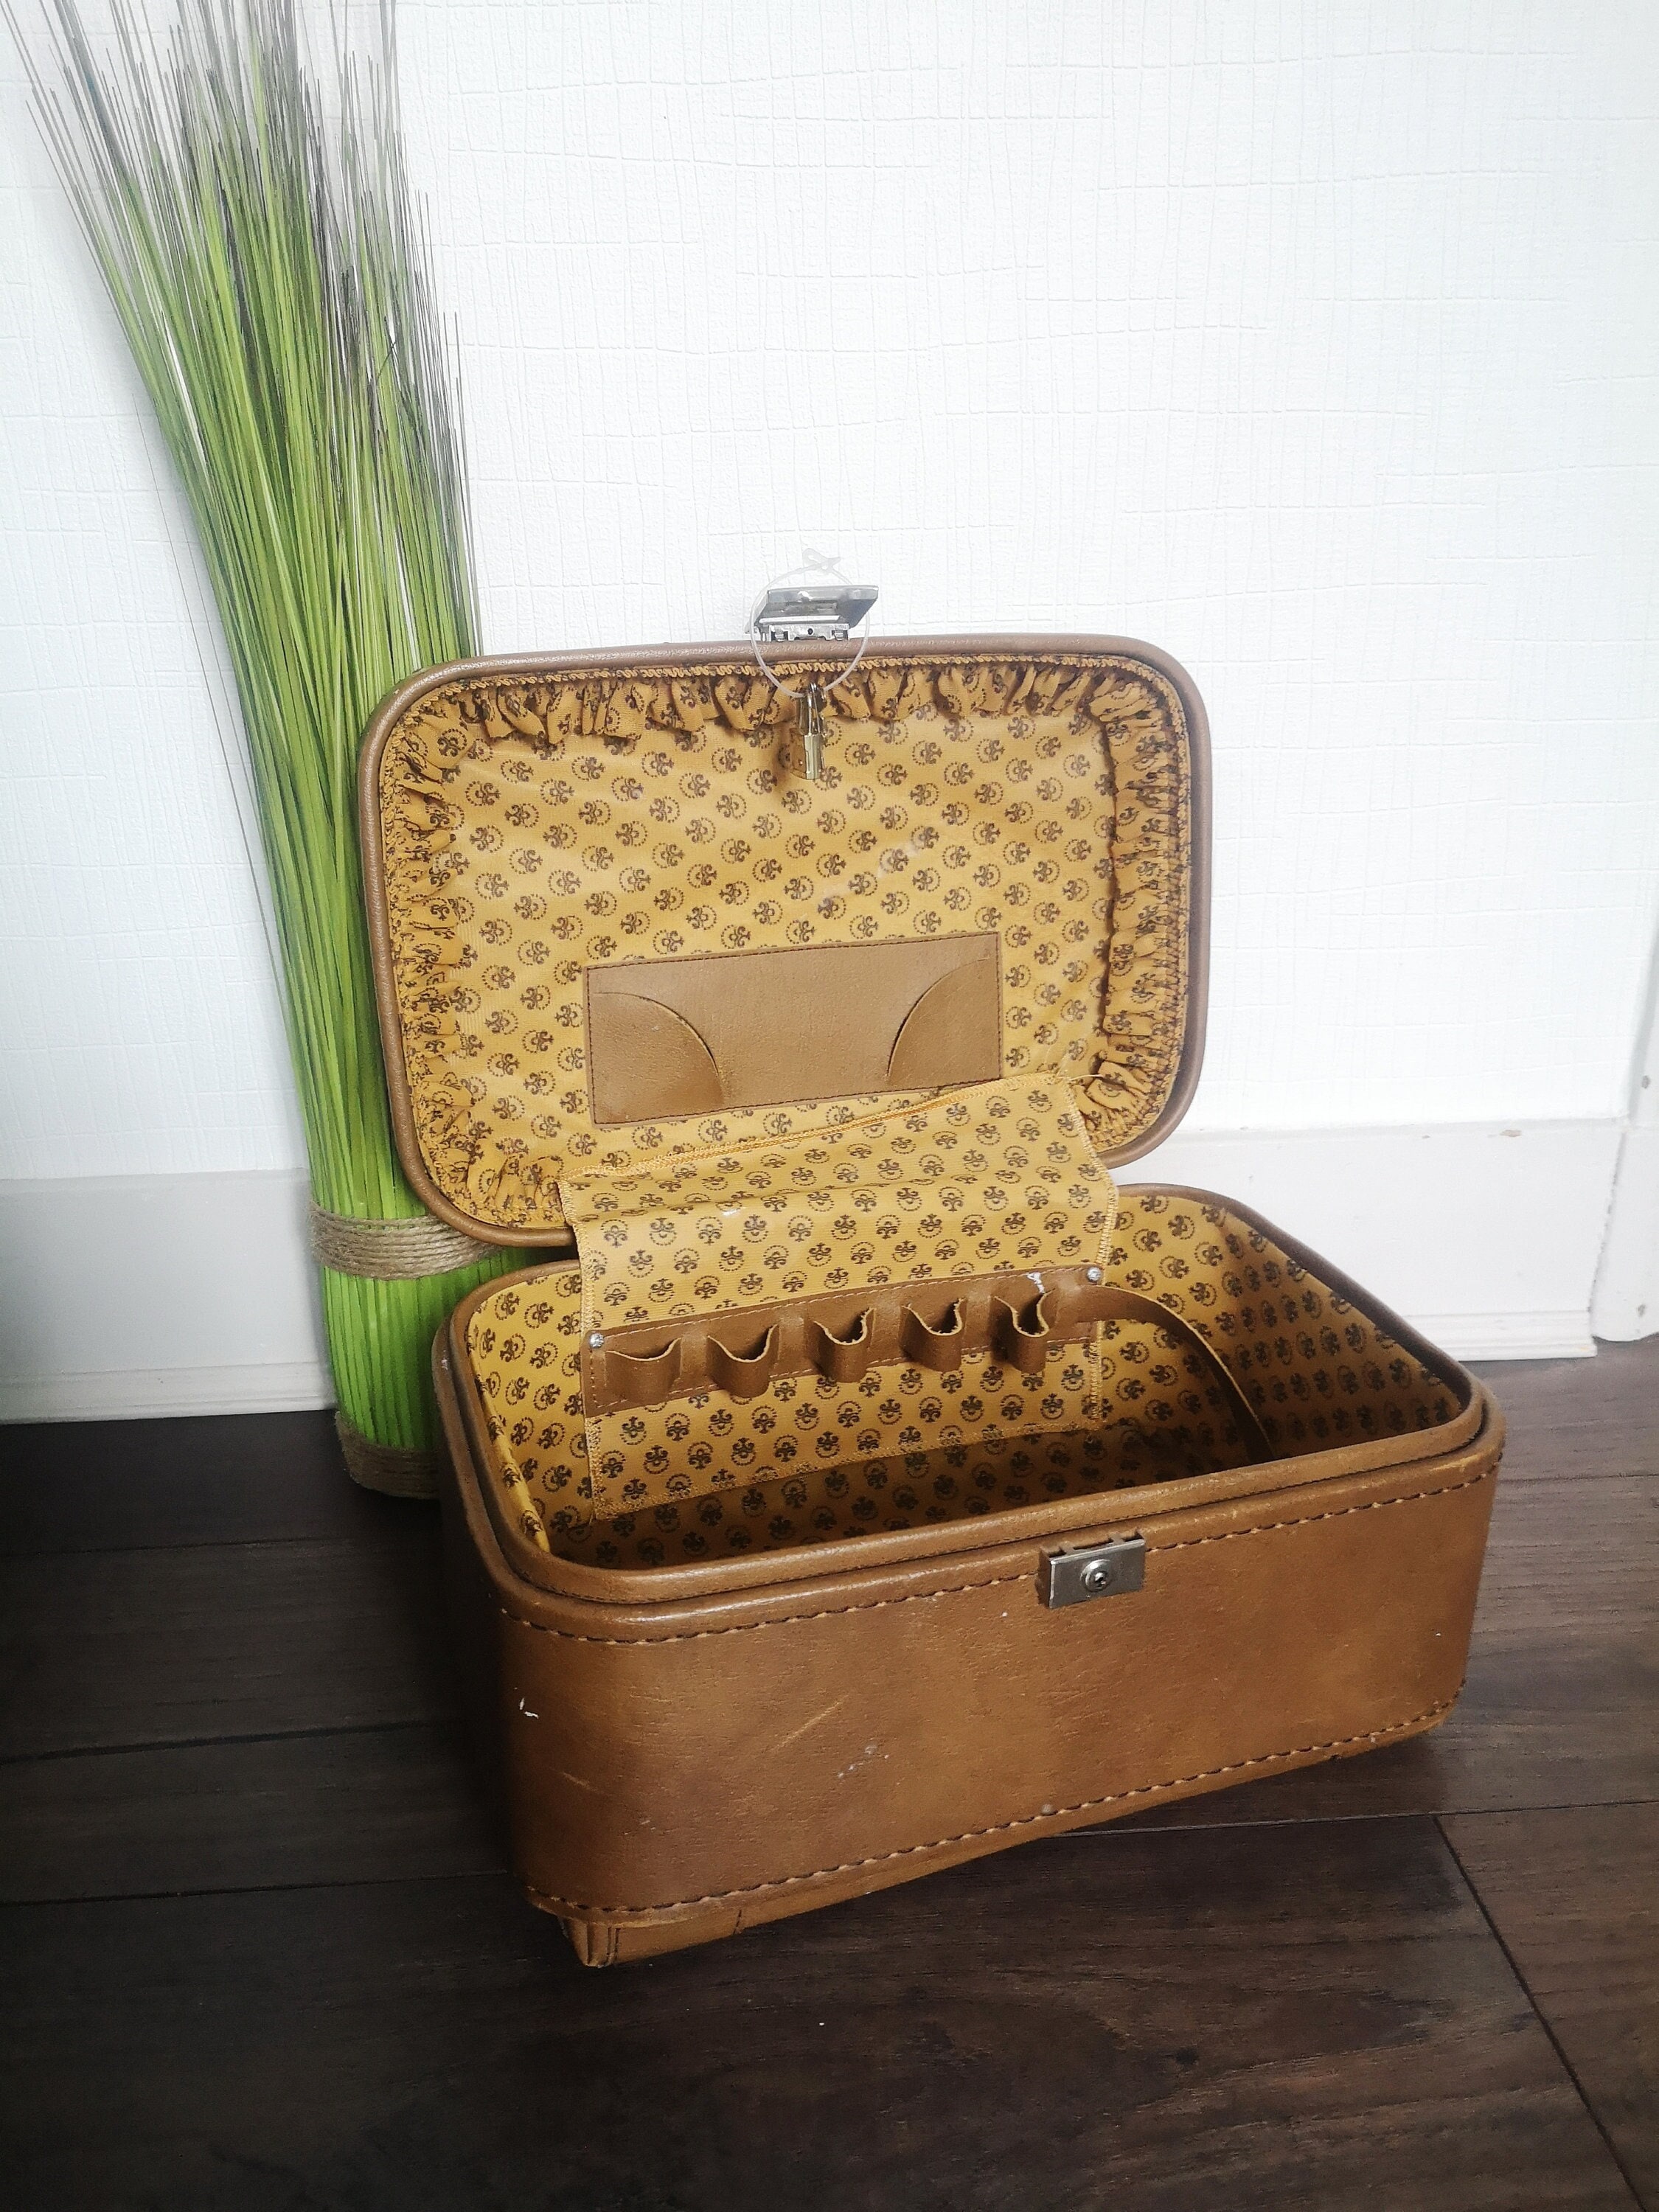 Porte valises de luxe avec coupole en laiton - RETIF